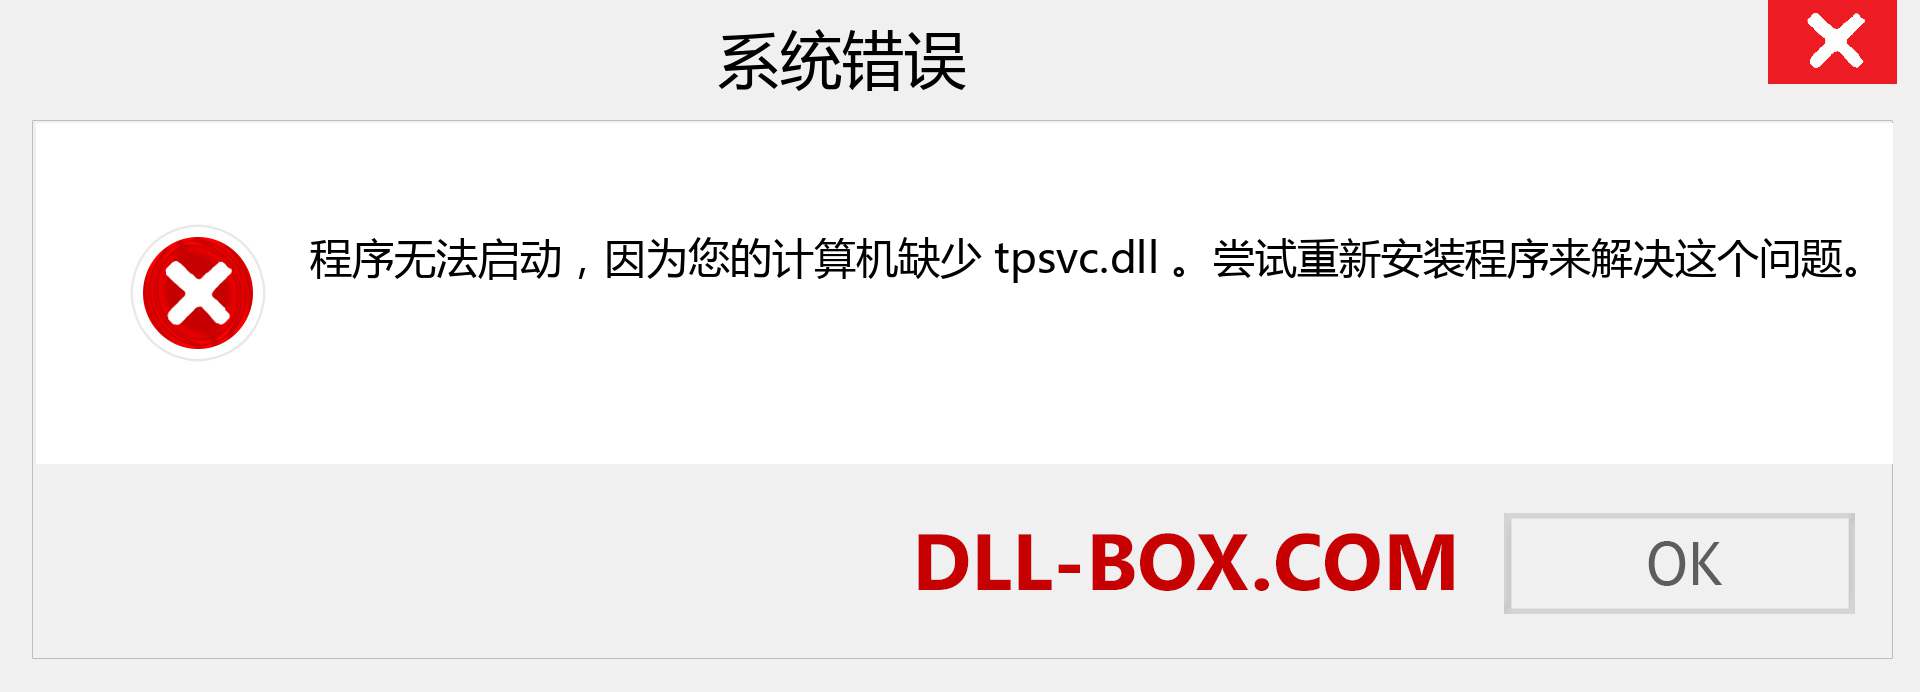 tpsvc.dll 文件丢失？。 适用于 Windows 7、8、10 的下载 - 修复 Windows、照片、图像上的 tpsvc dll 丢失错误